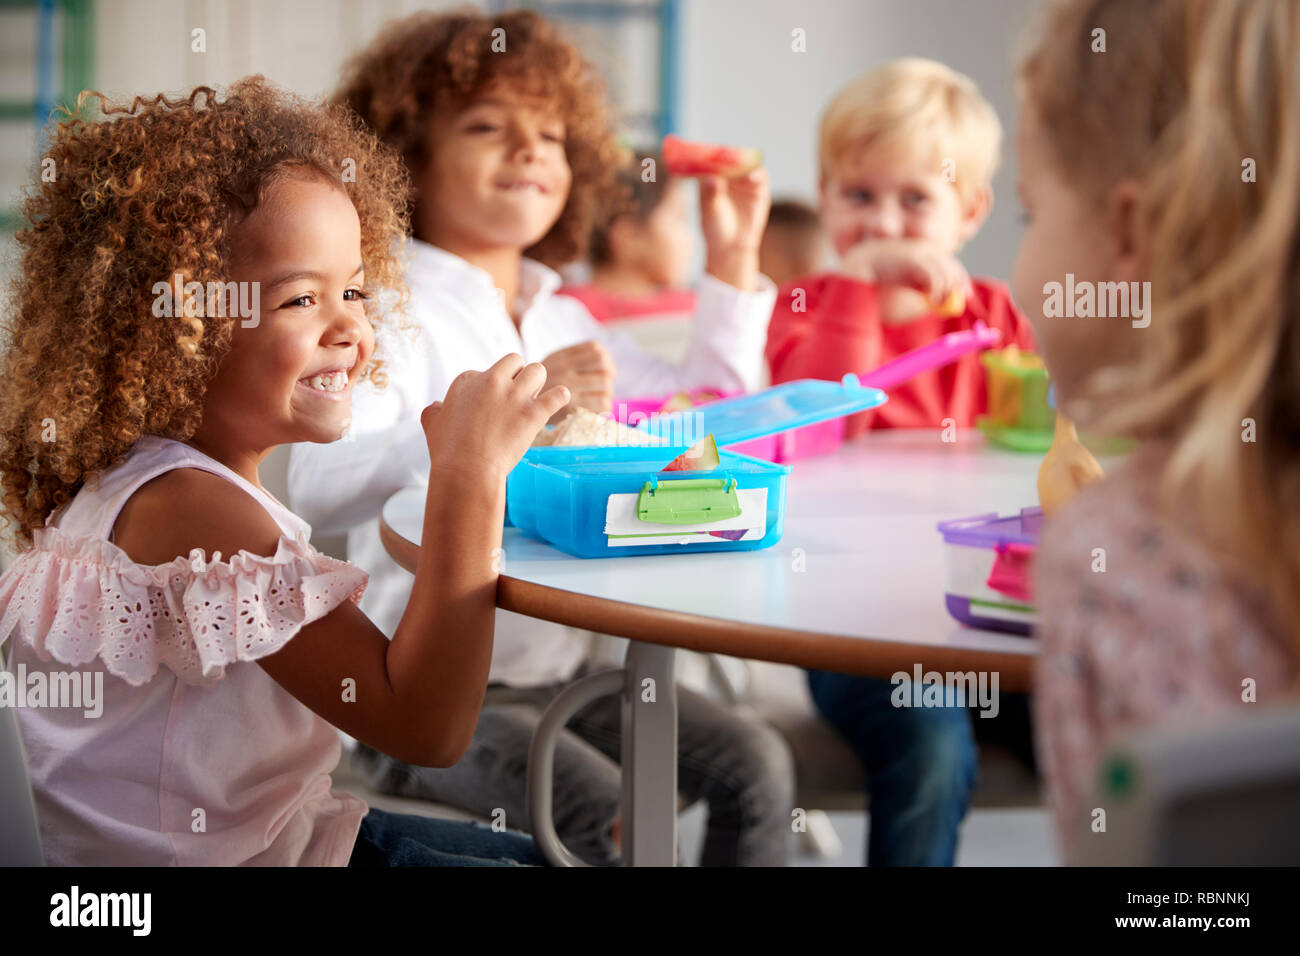 Close up of smiling jeunes enfants assis à une table en train de manger leurs paniers-repas ensemble à l'école du nourrisson, selective focus Banque D'Images